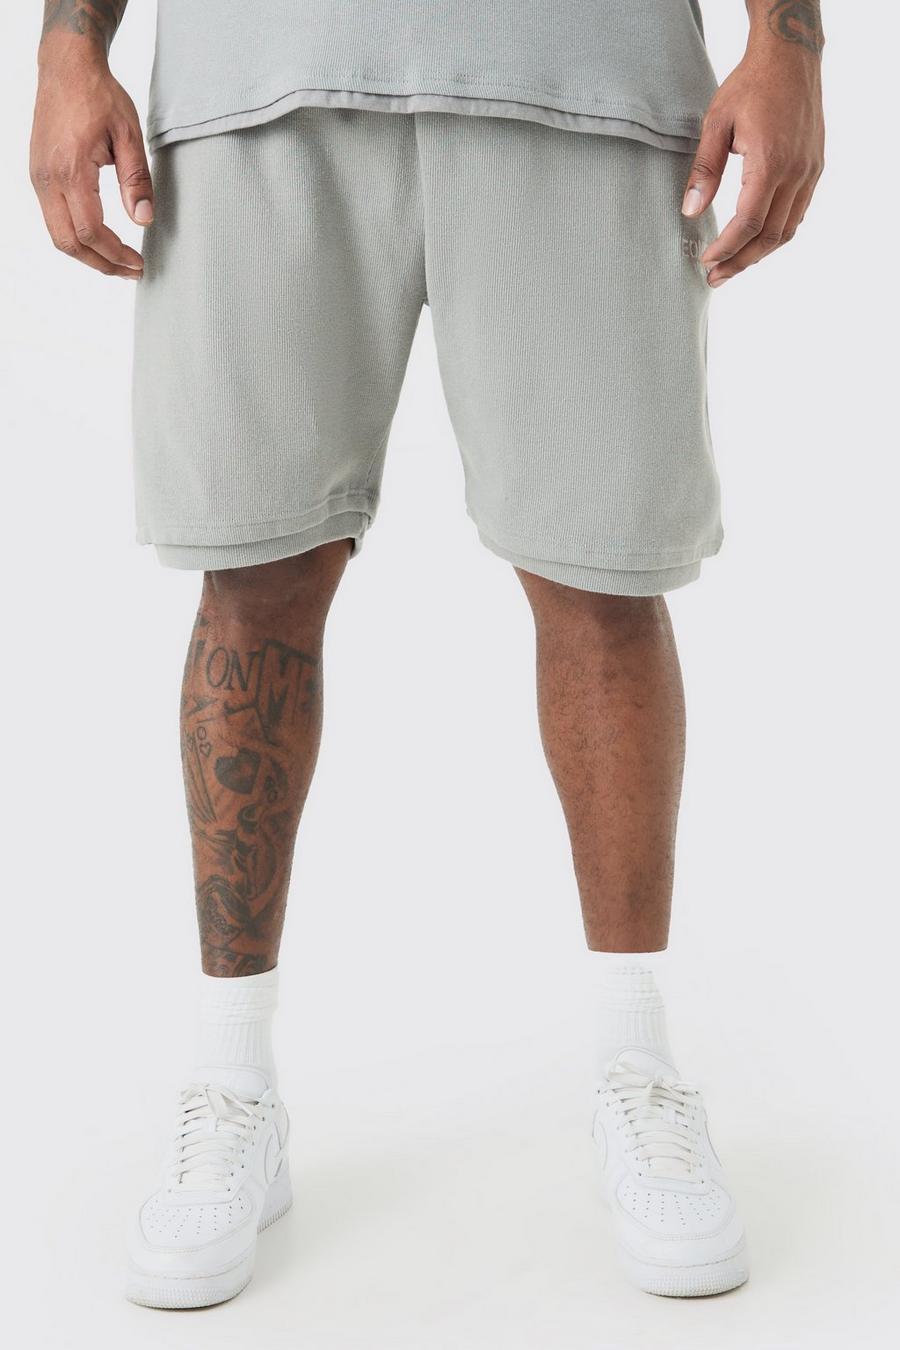 Pantalón corto Plus holgado de canalé grueso EDITION, Grey